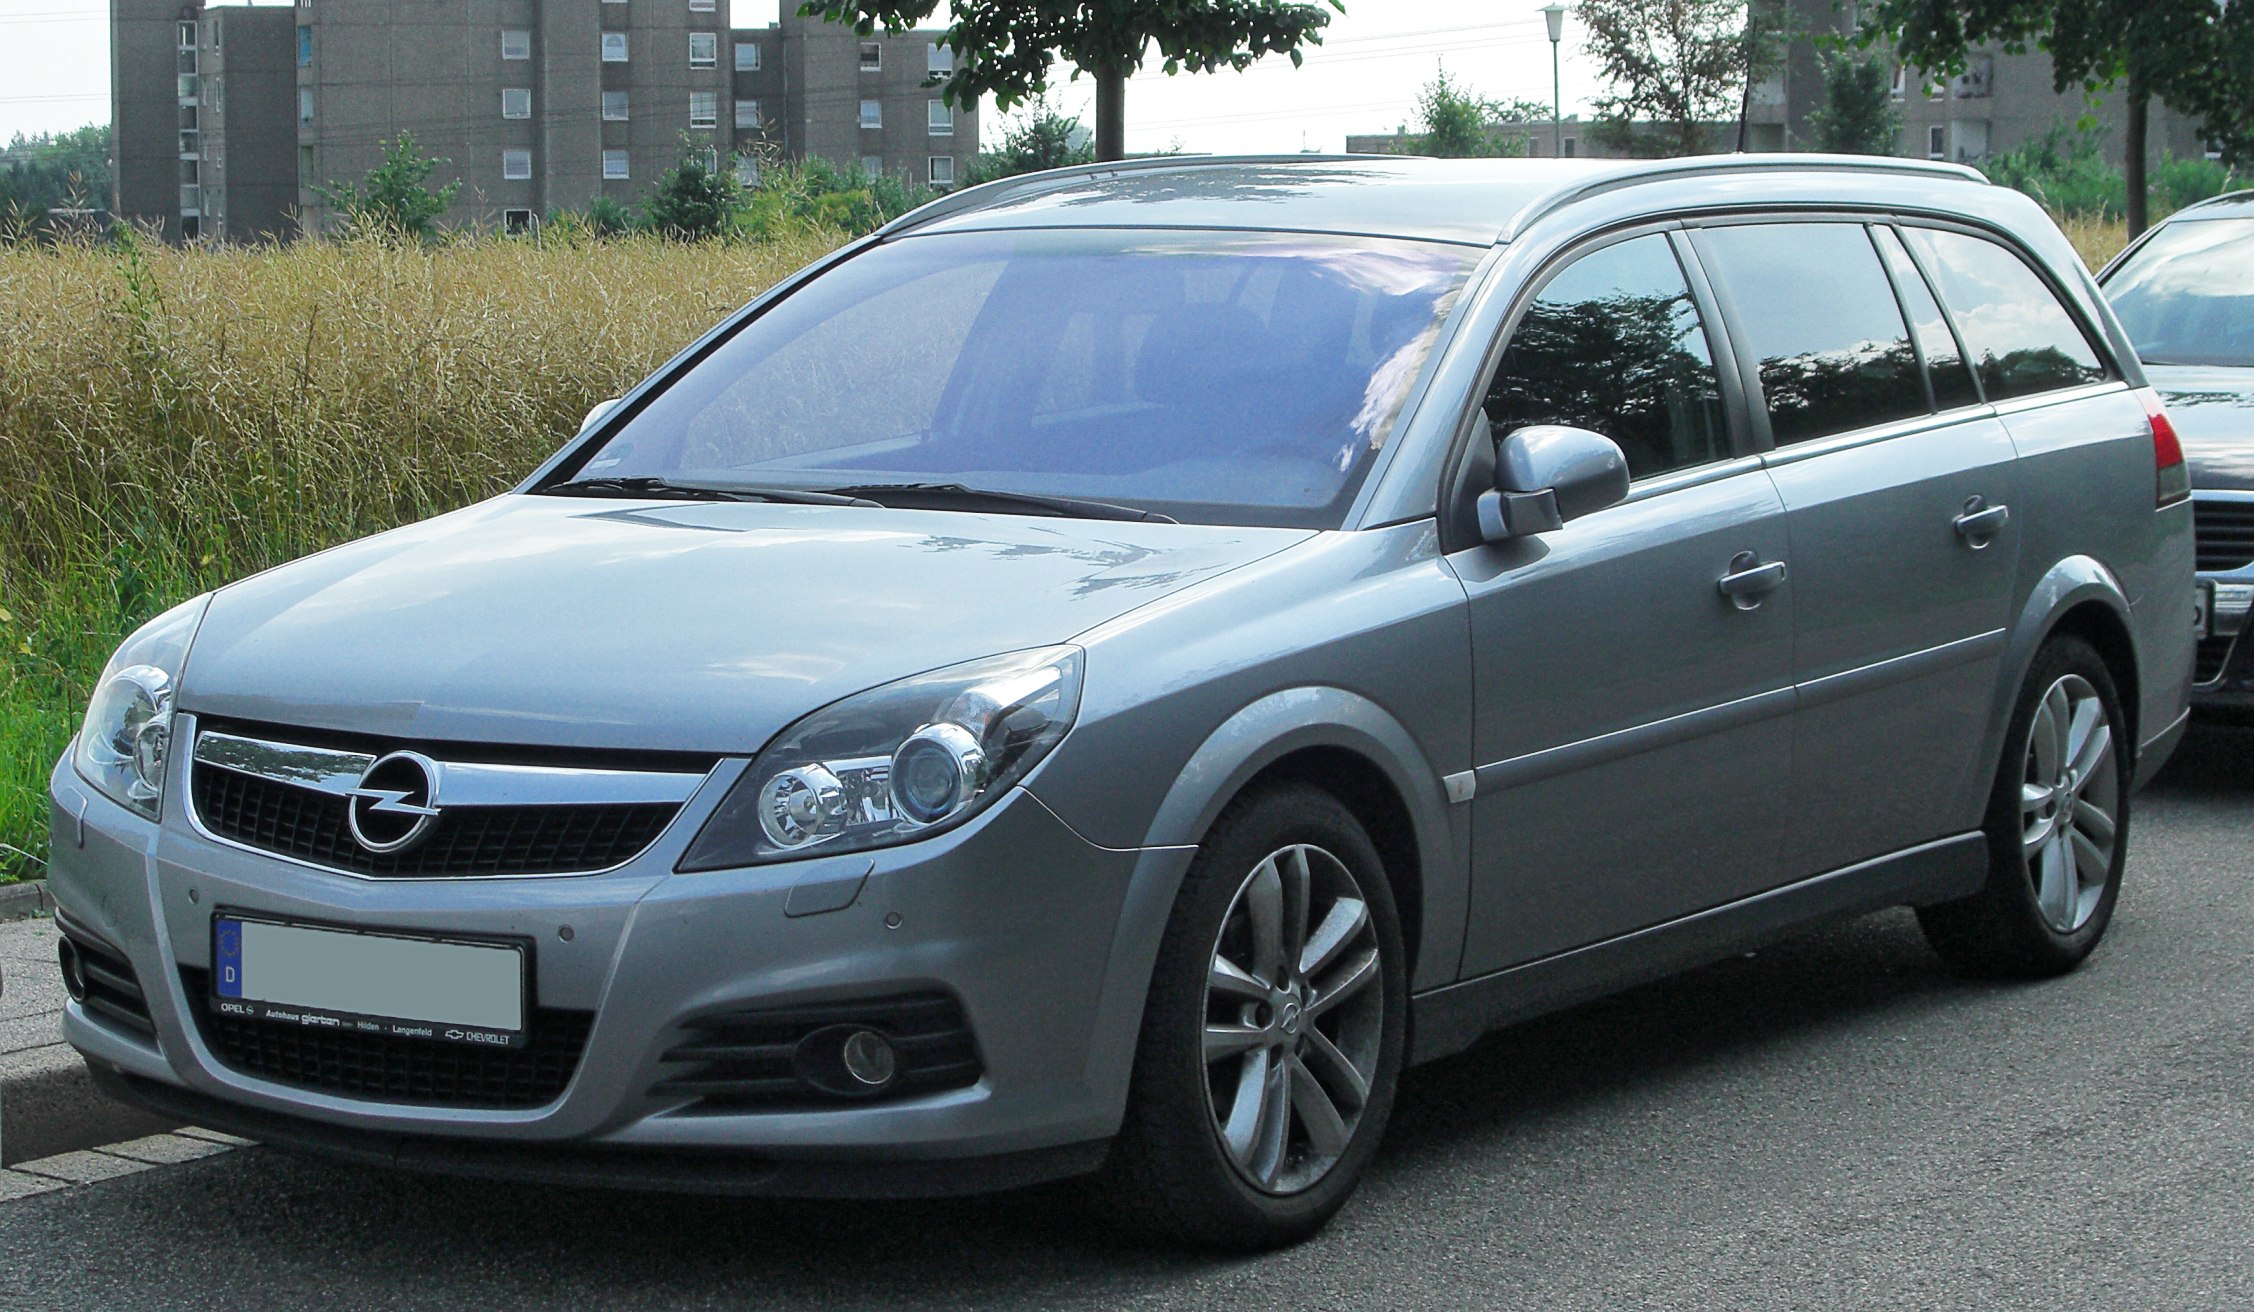 Вектра караван. Opel Vectra c 2003 универсал. Opel Vectra c 2008 универсал. Opel Vectra c 2007. Opel Vectra c 2.2 универсал.